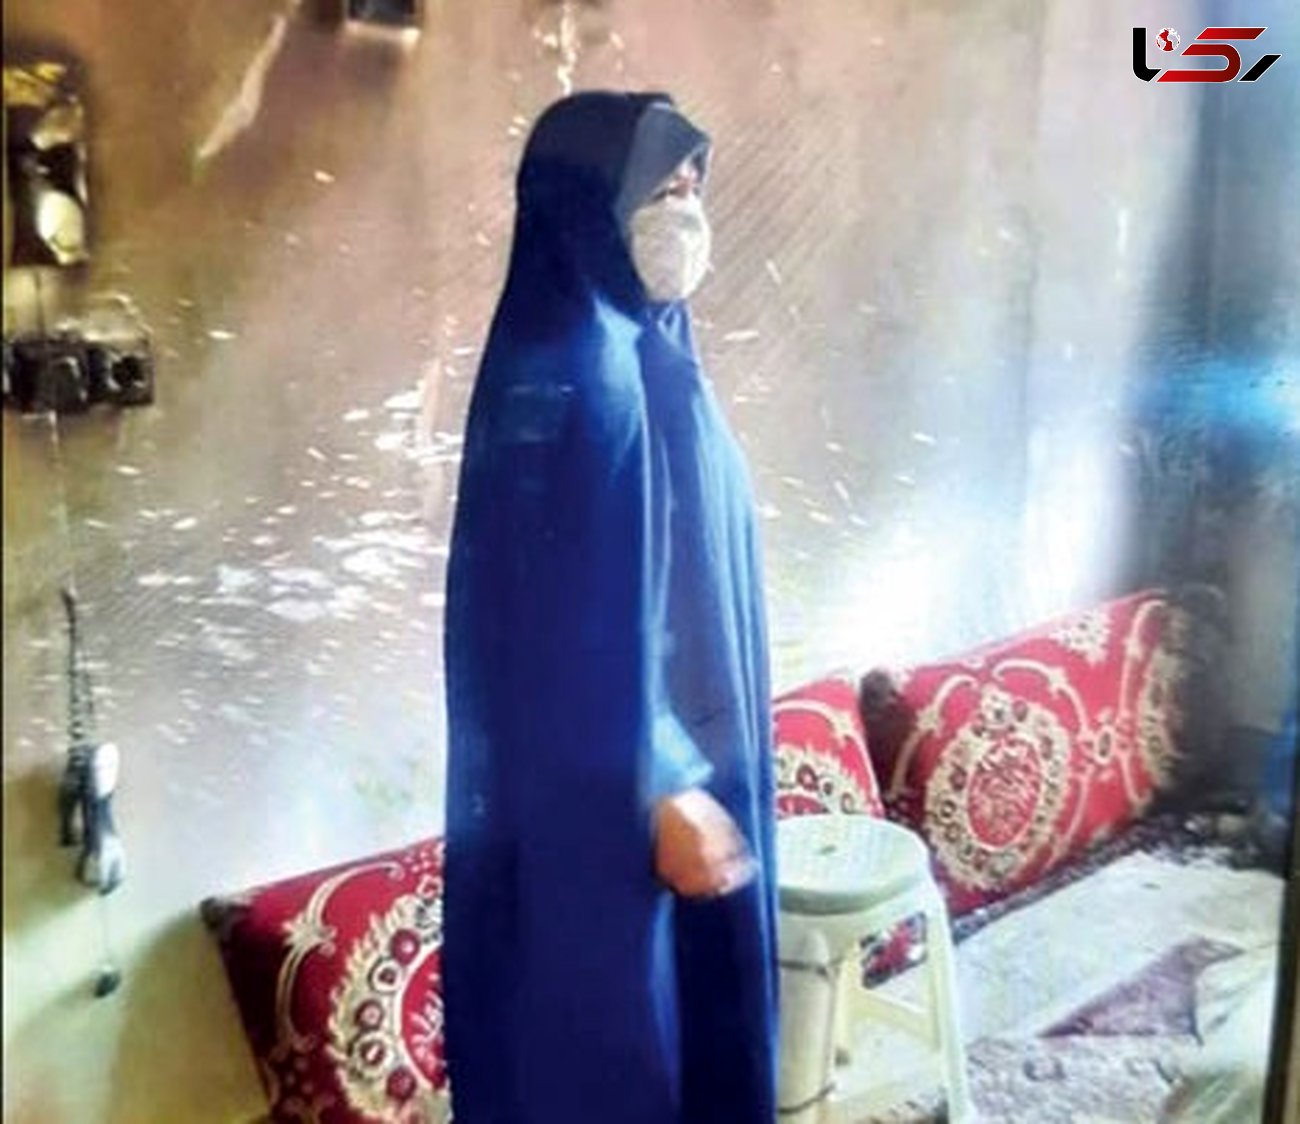 اعتراف زن مشهدی به قتل مرد آزارگر زیر دوش + گفتگو و عکس